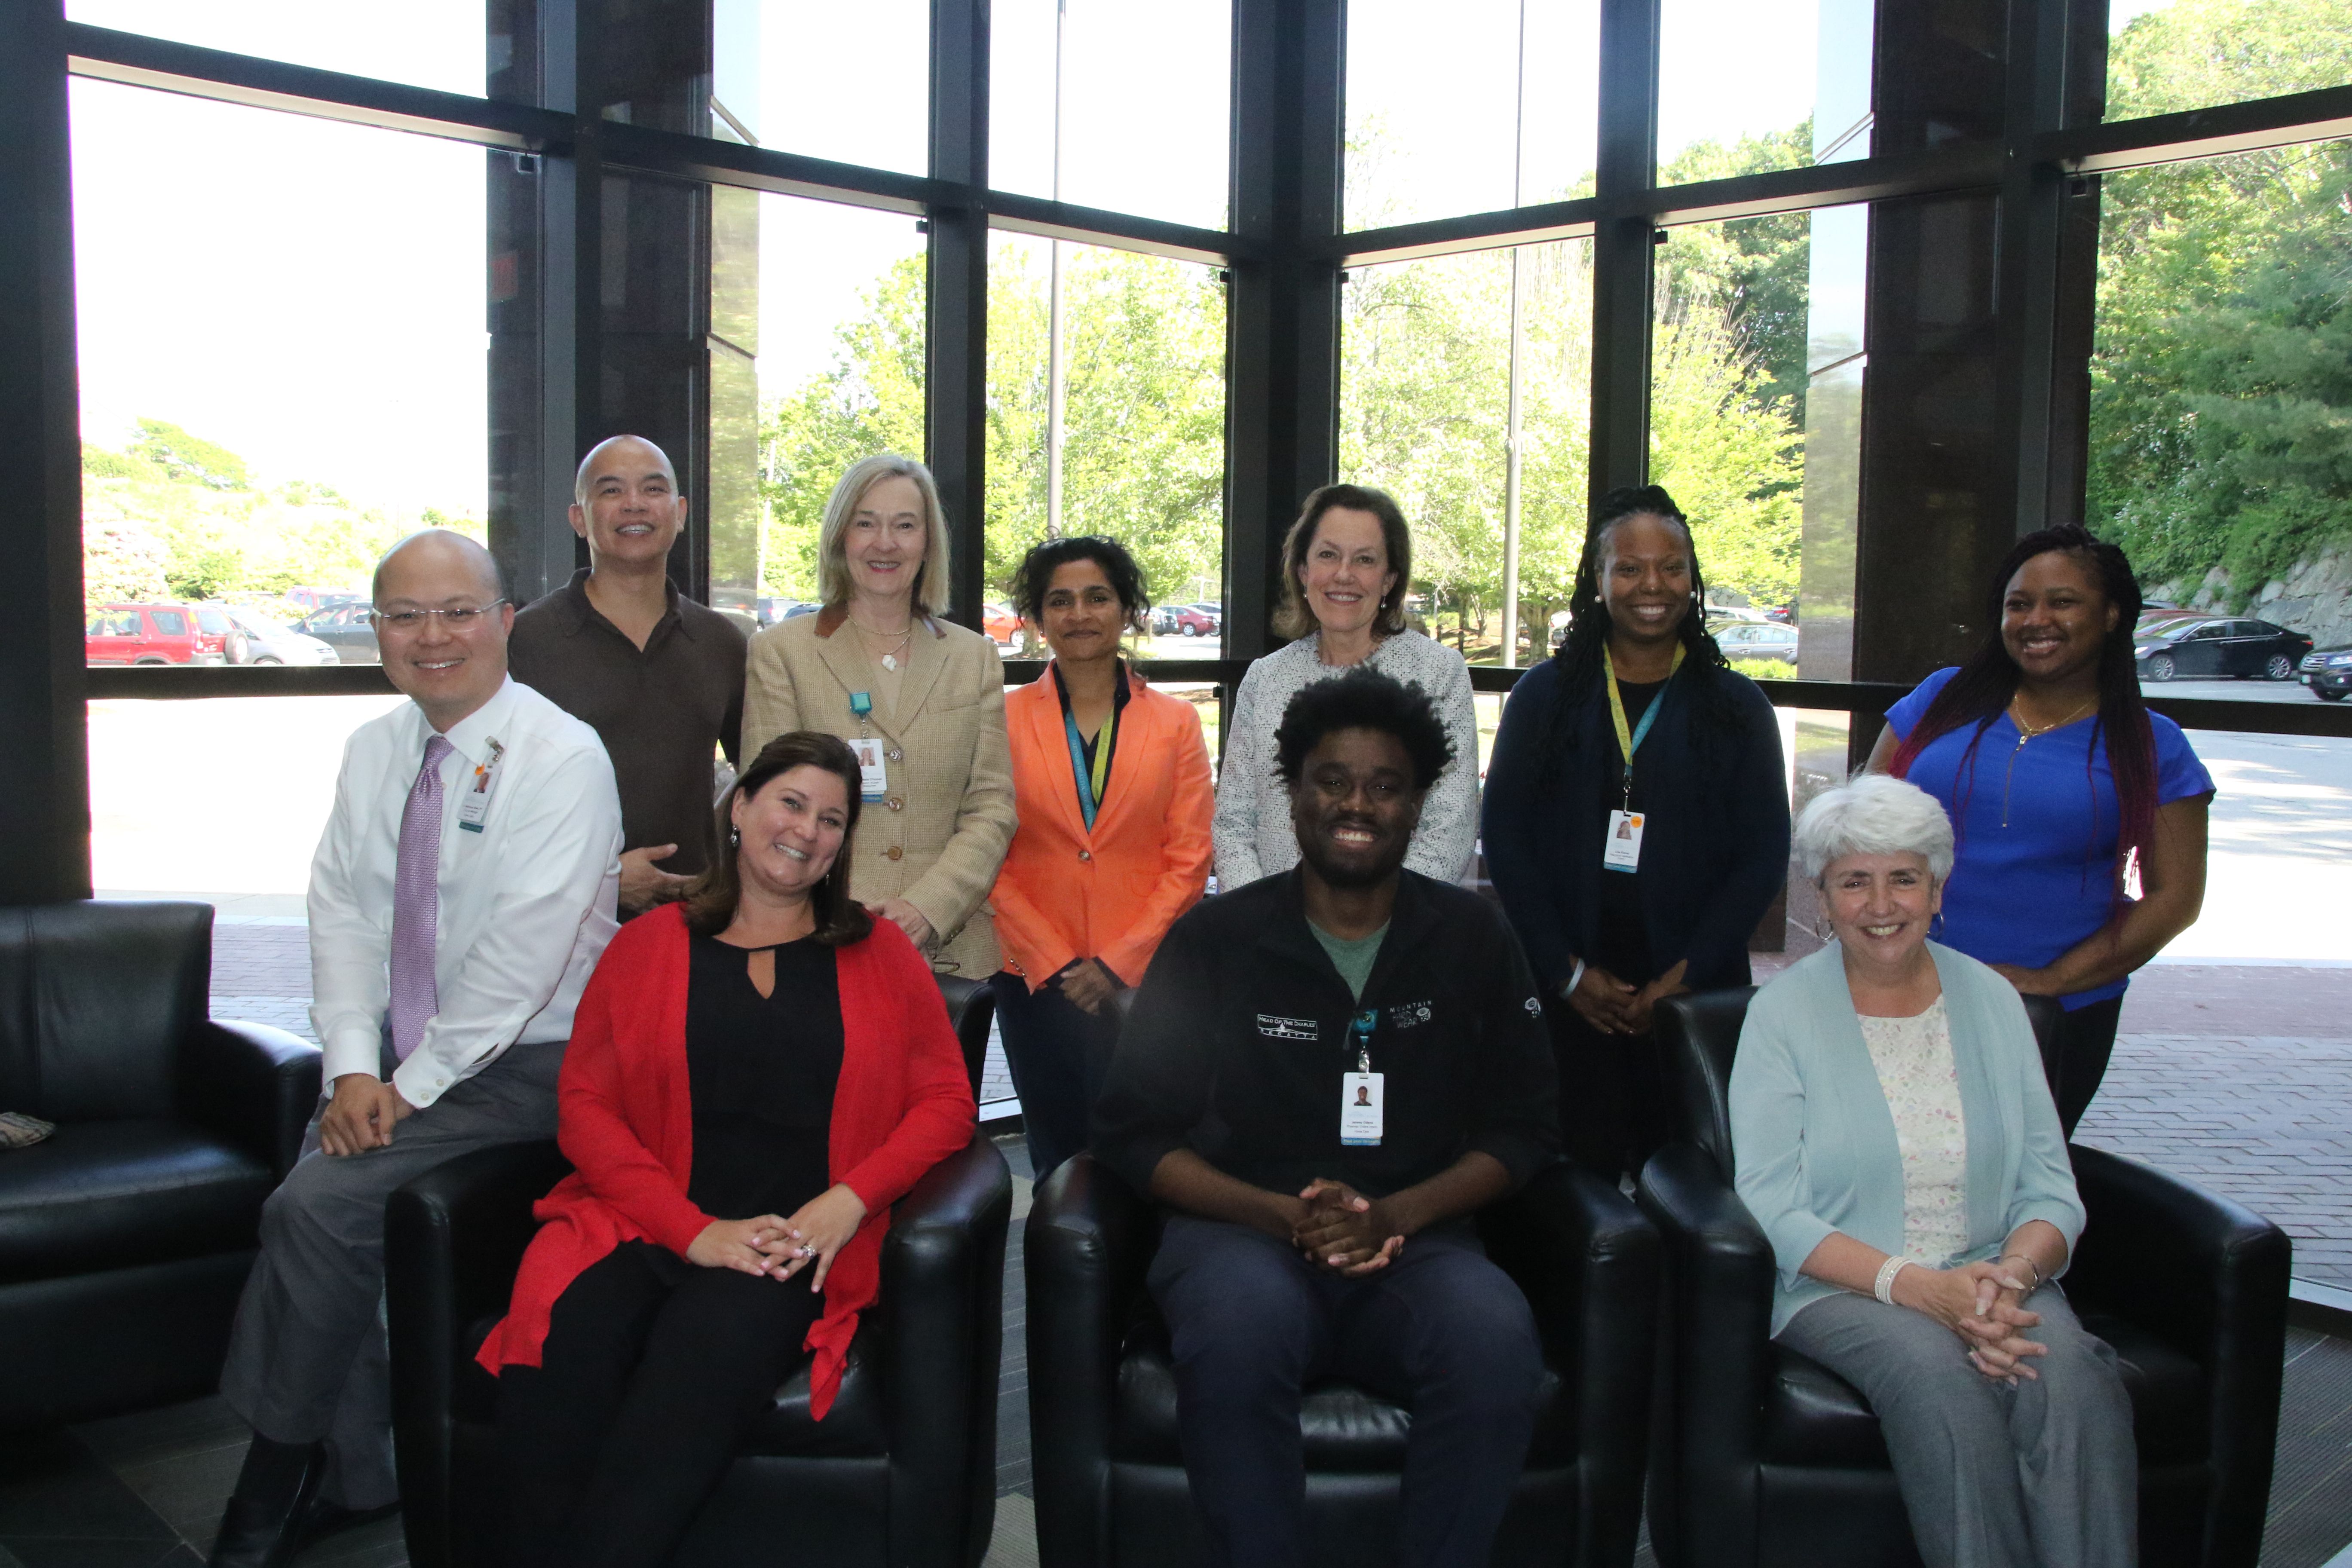 Our Diversity & Inclusion Council